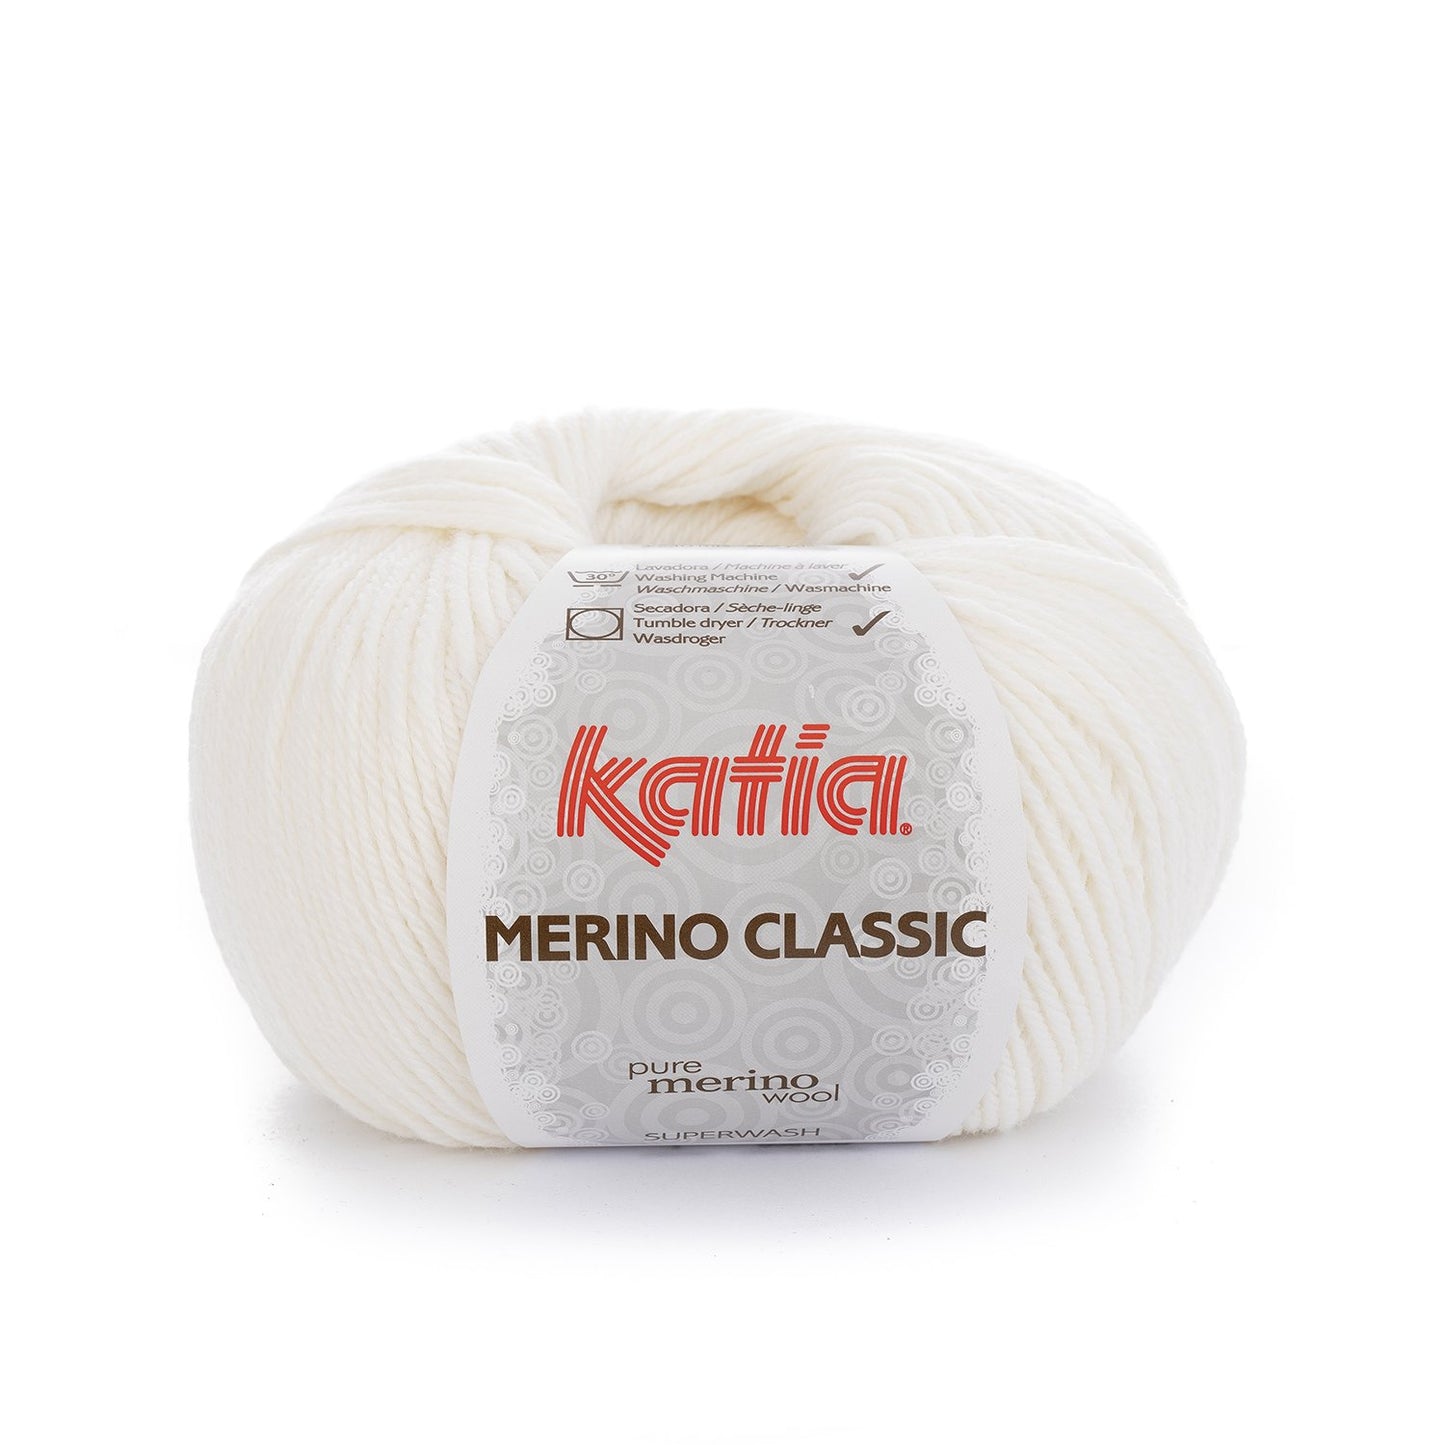 Merino classic 1.